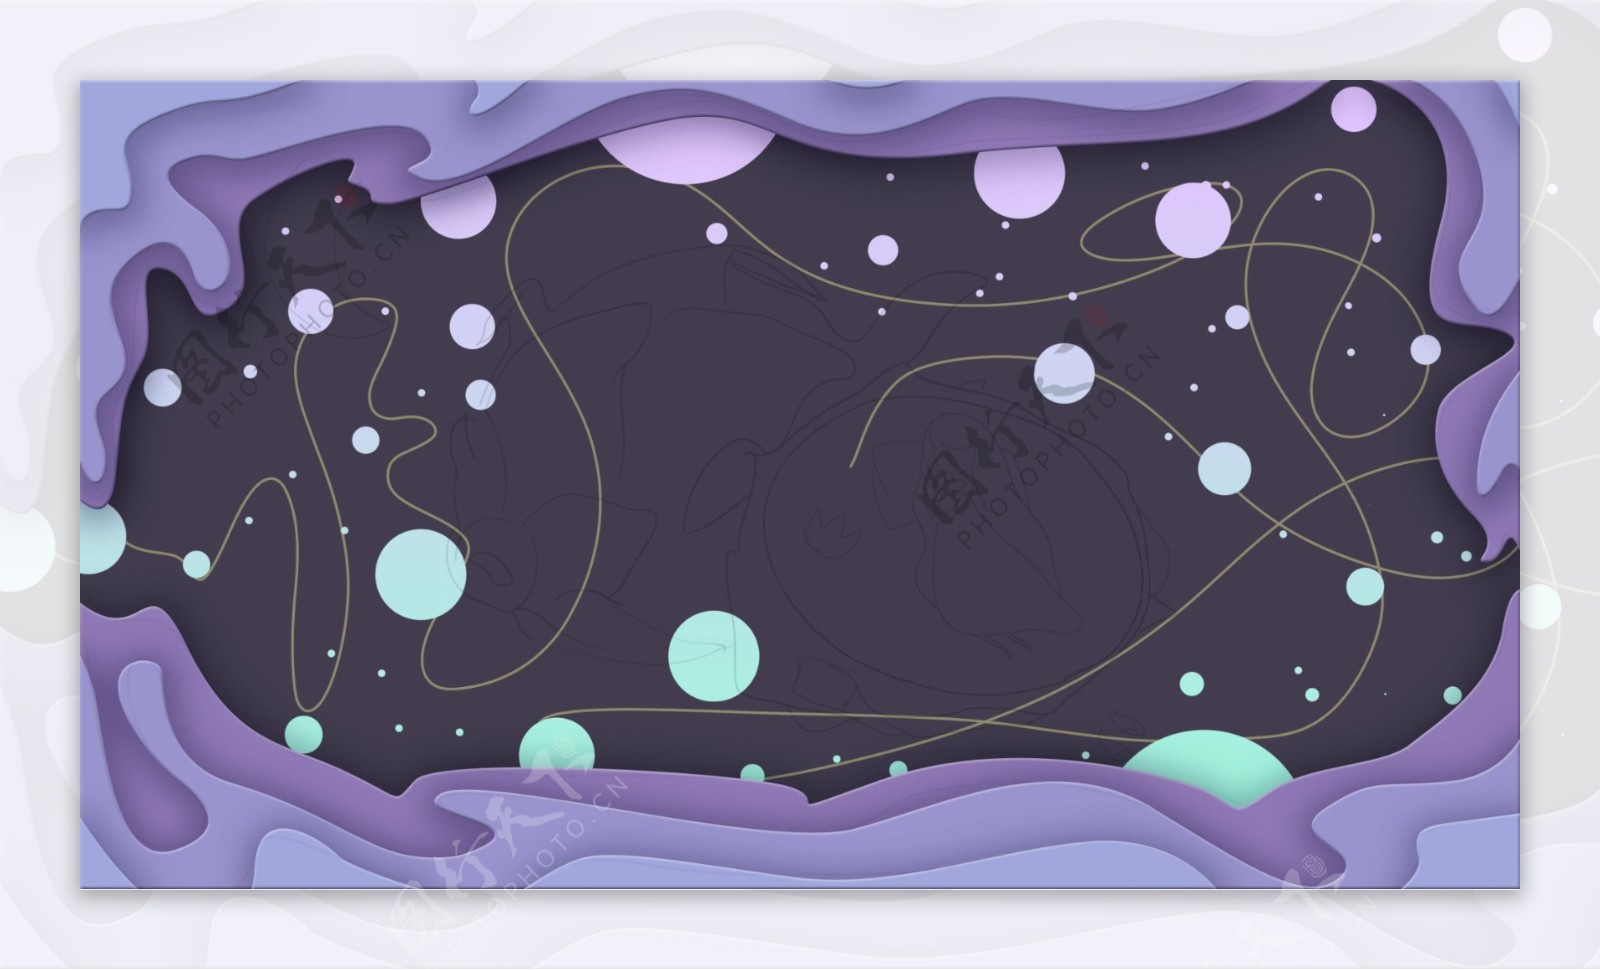 紫色梦幻剪纸风星空星球背景设计